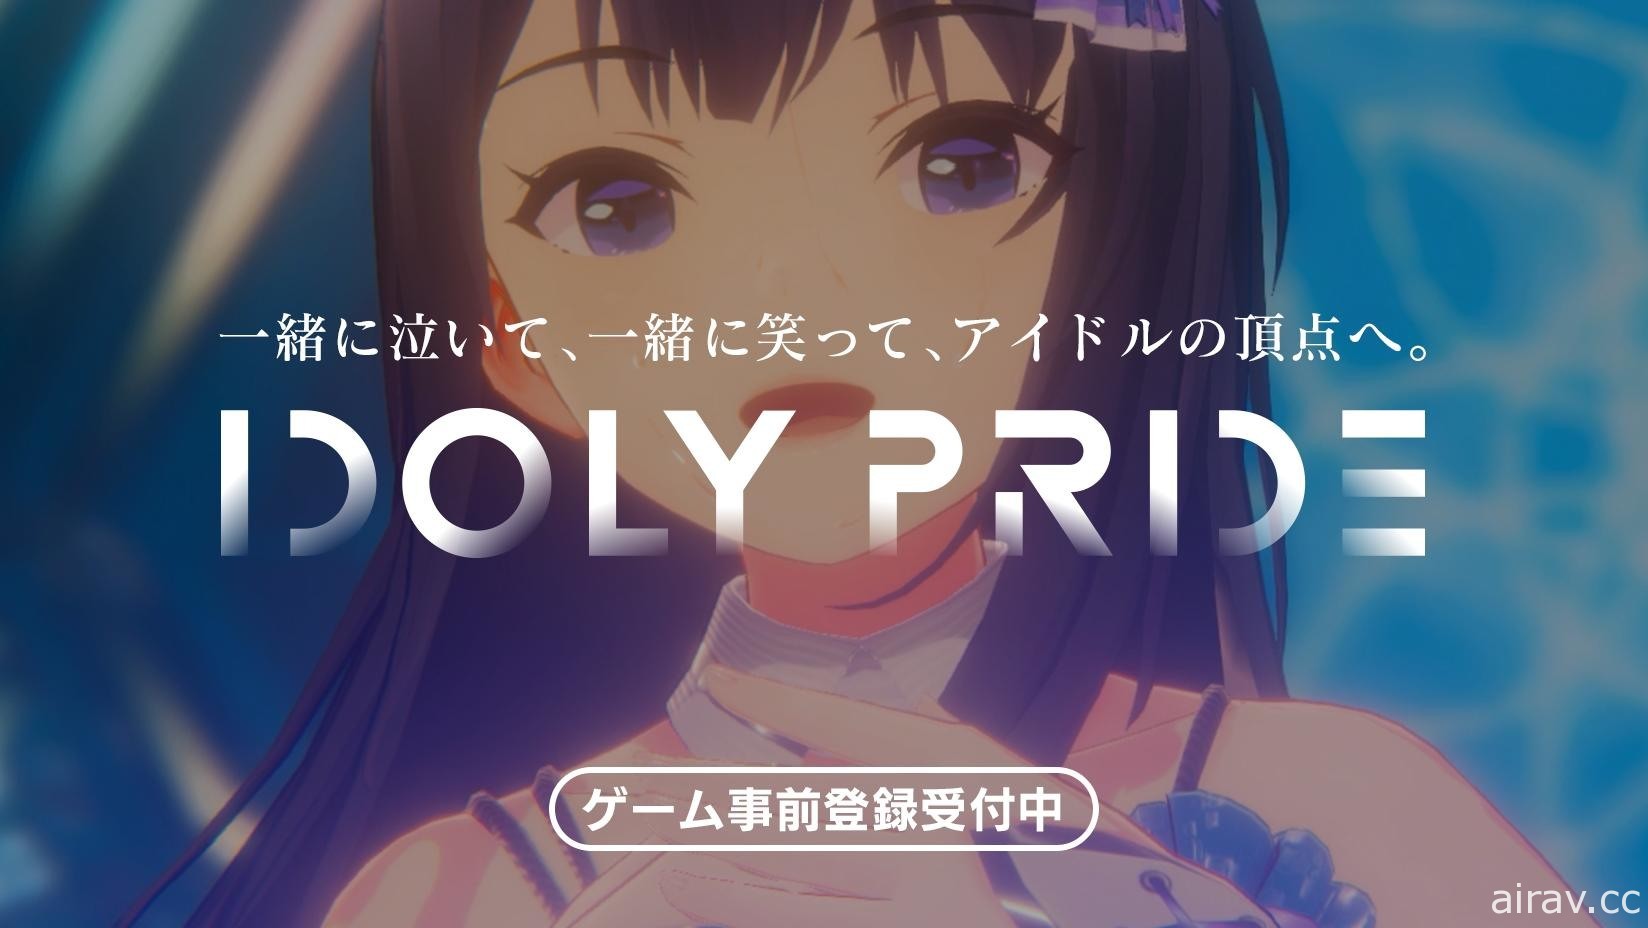 大型多媒体偶像企划《IDOLY PRIDE》开放事前登录 预计今年春季于日本推出